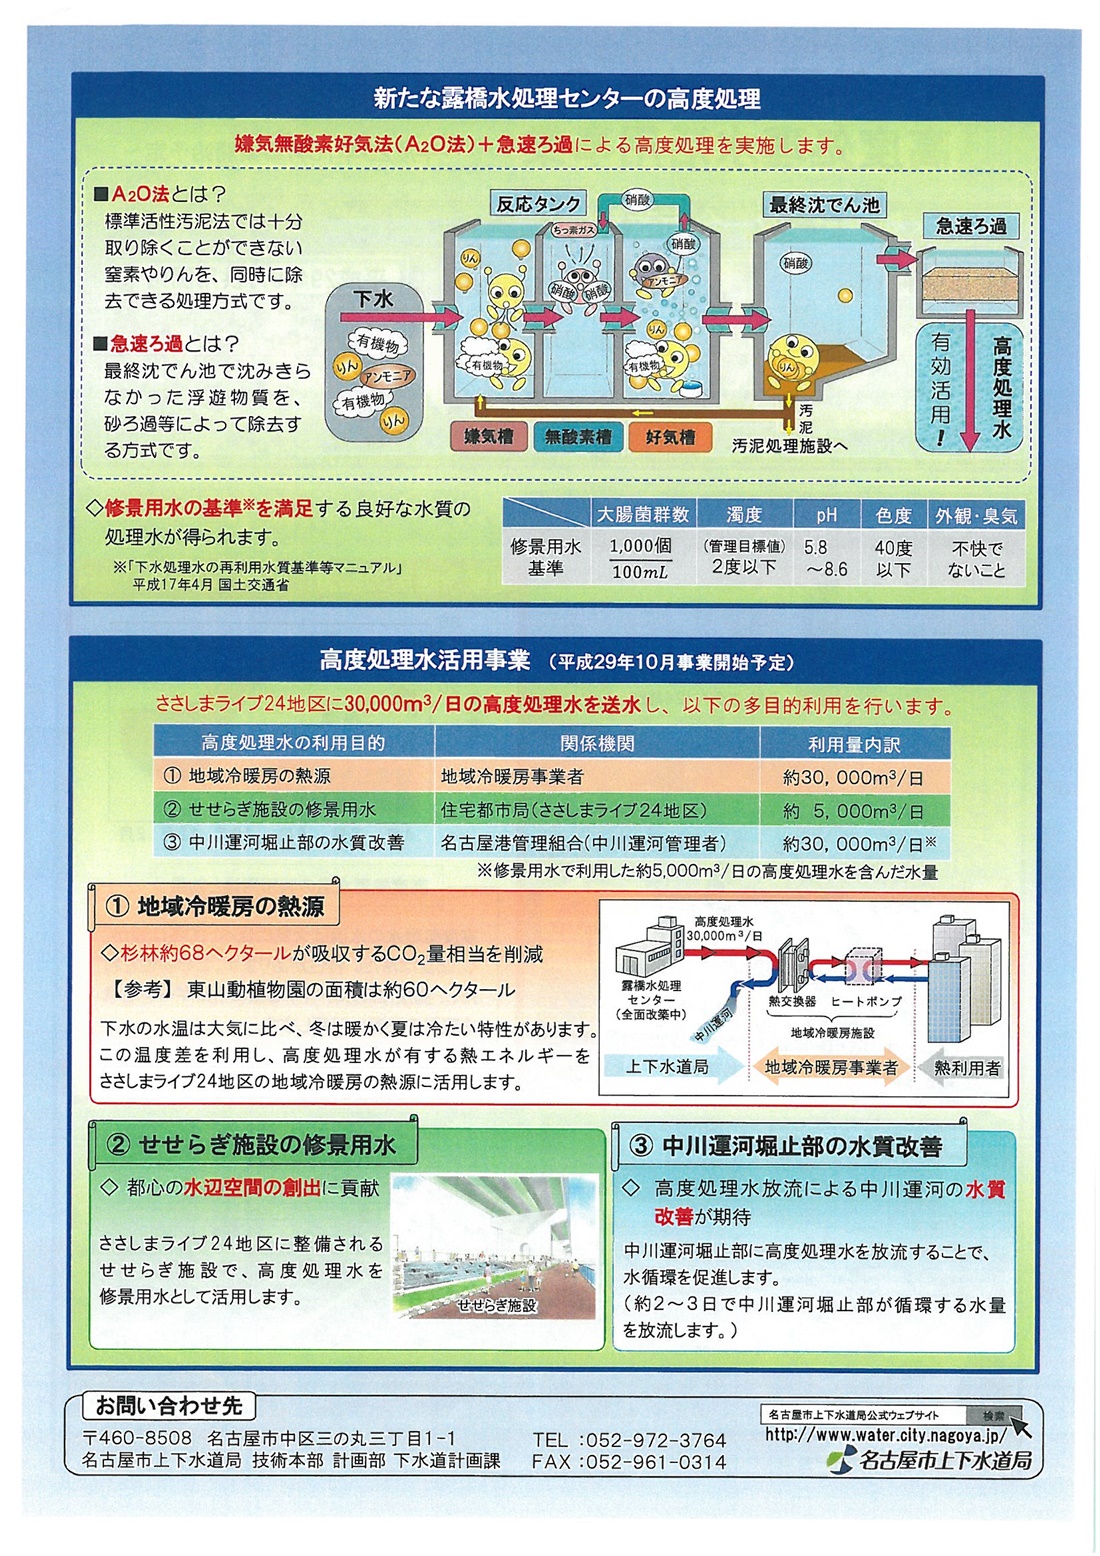 露橋水処理センタの高度処理水活用事業について 名古屋市上下水道局パンフレットより